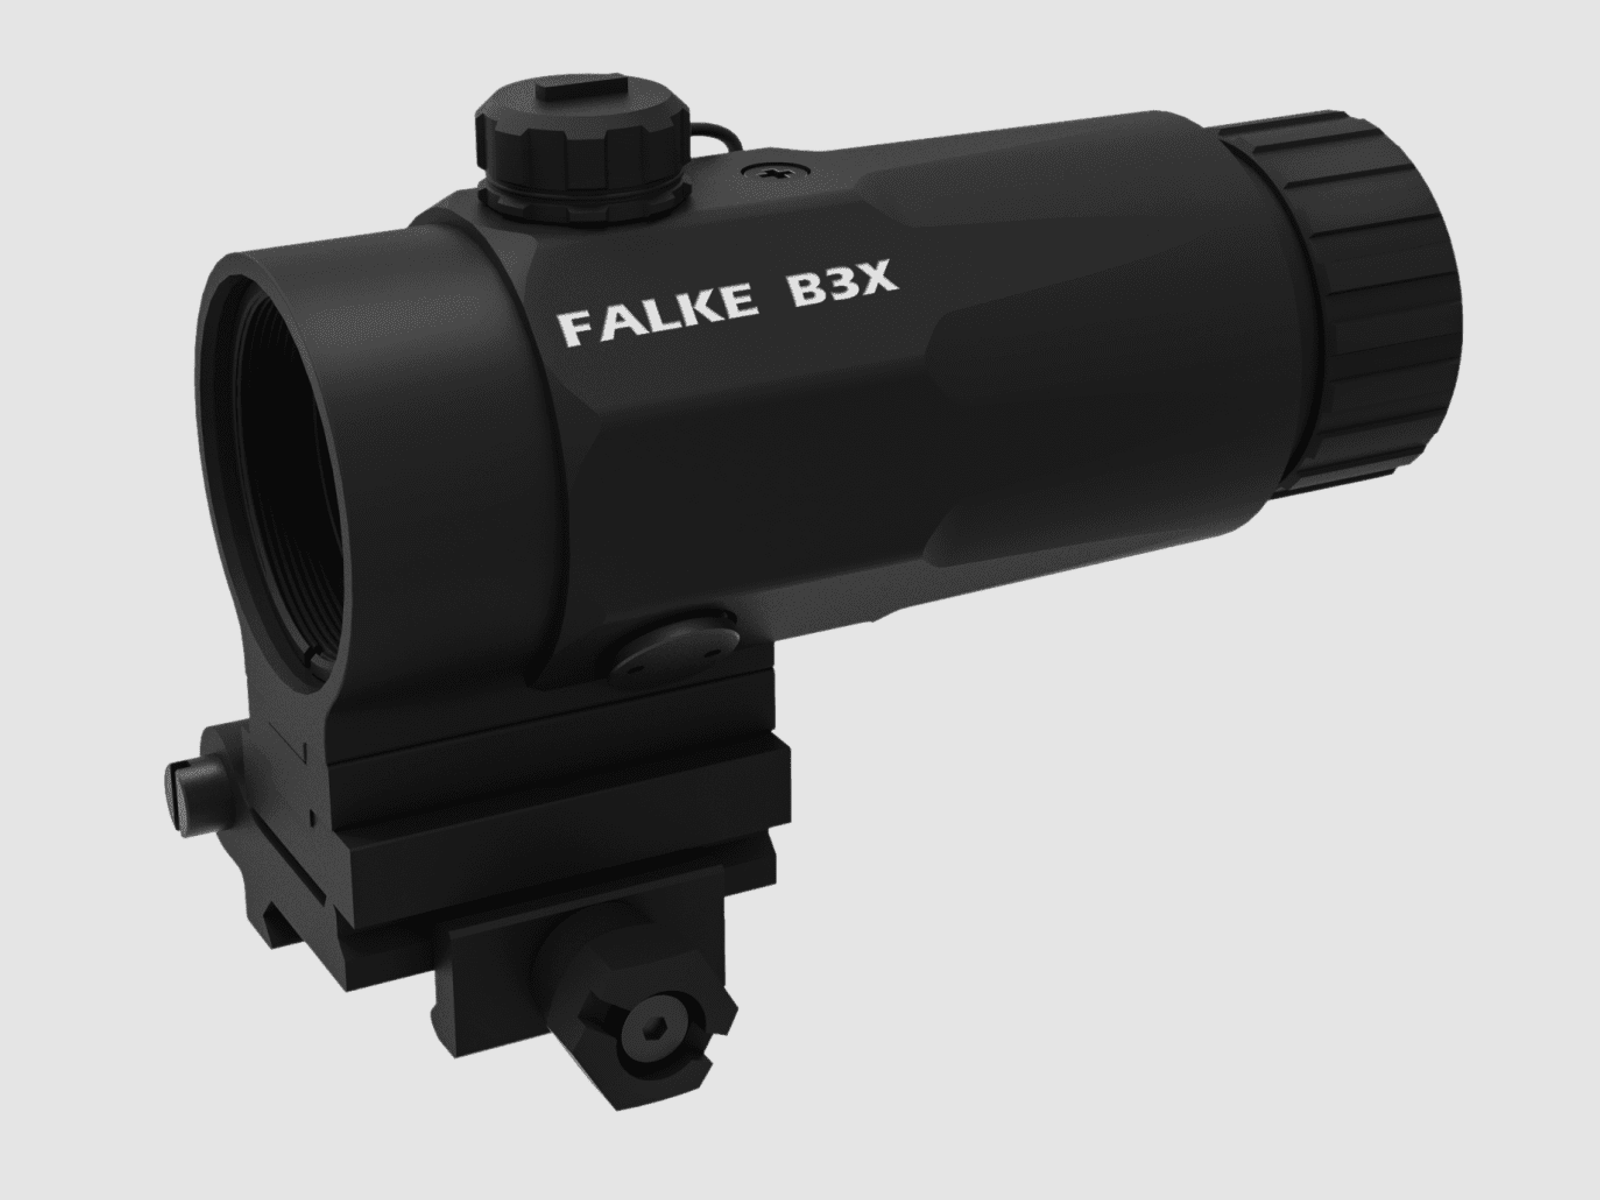 Falke B3x Vergrößerungsmodul